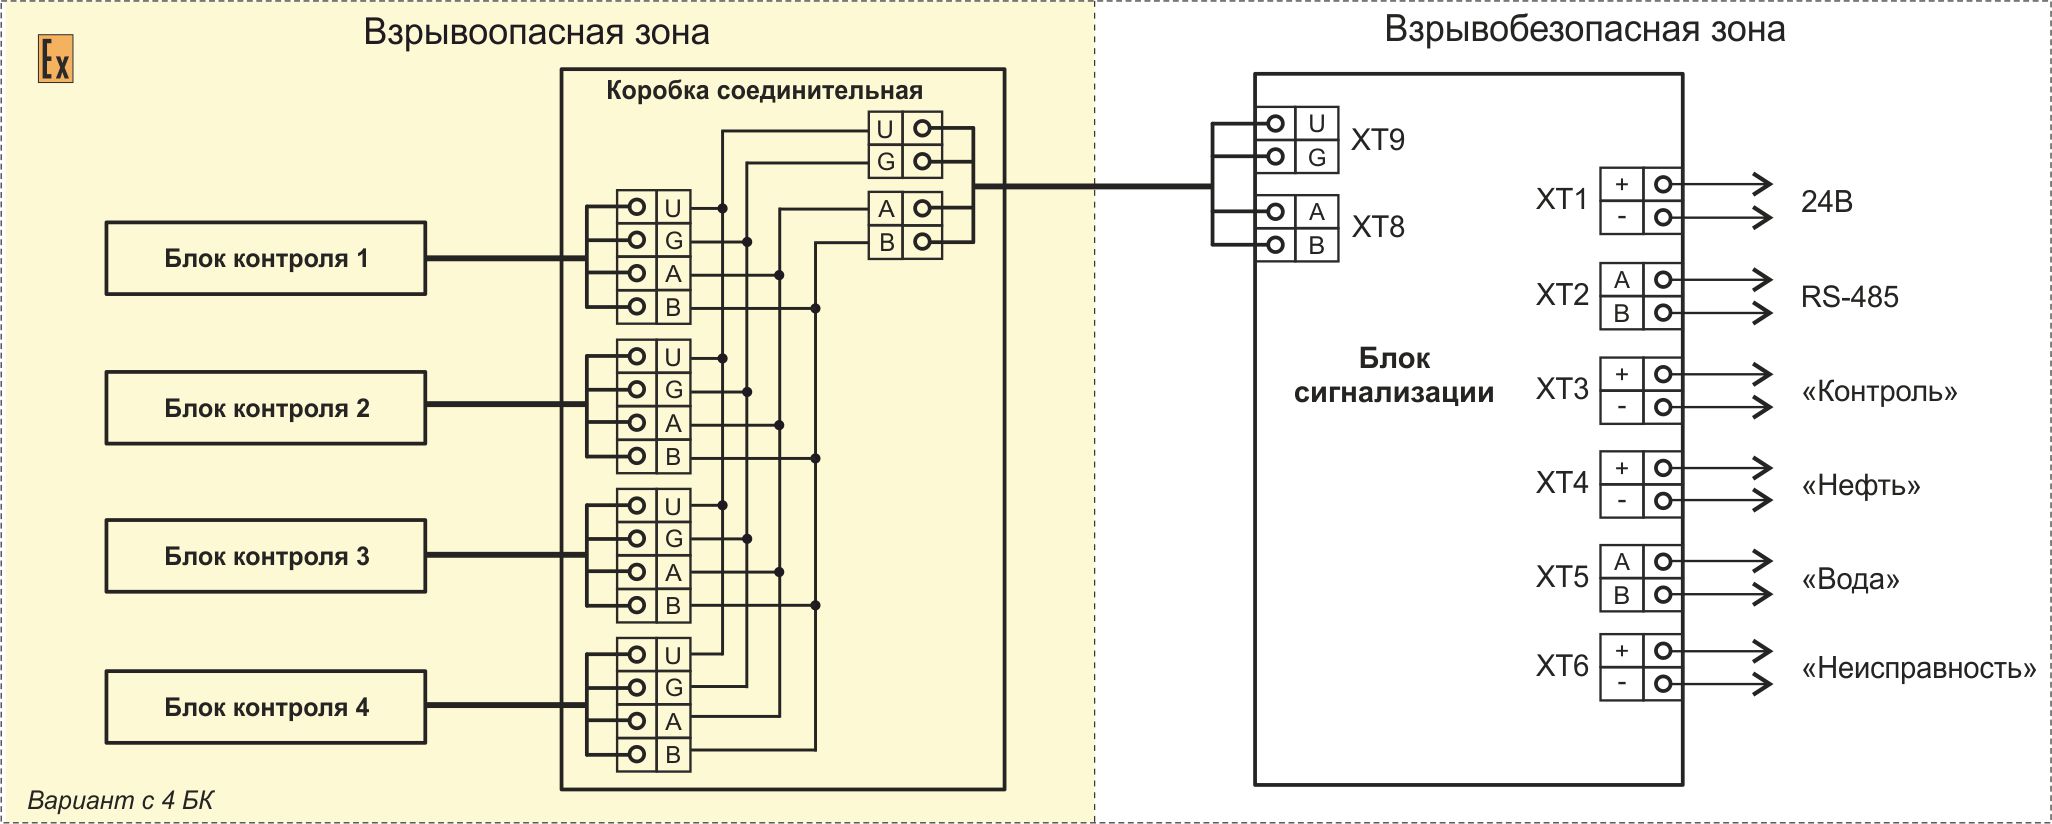 Connection scheme of TIK-SVN